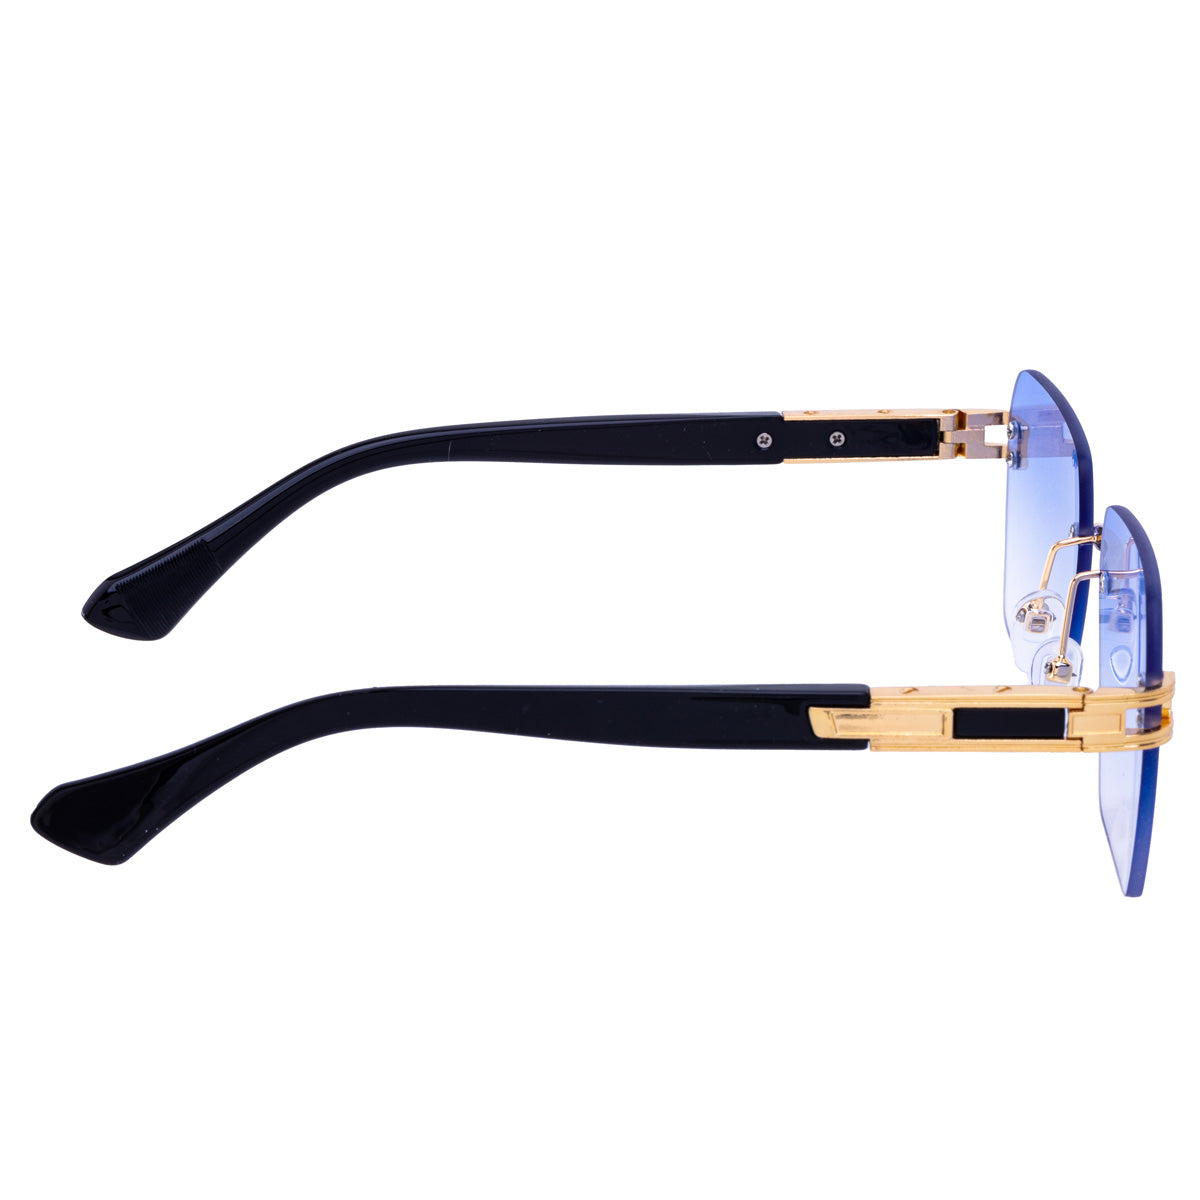 Angled rectangular sunglasses frameless lenses